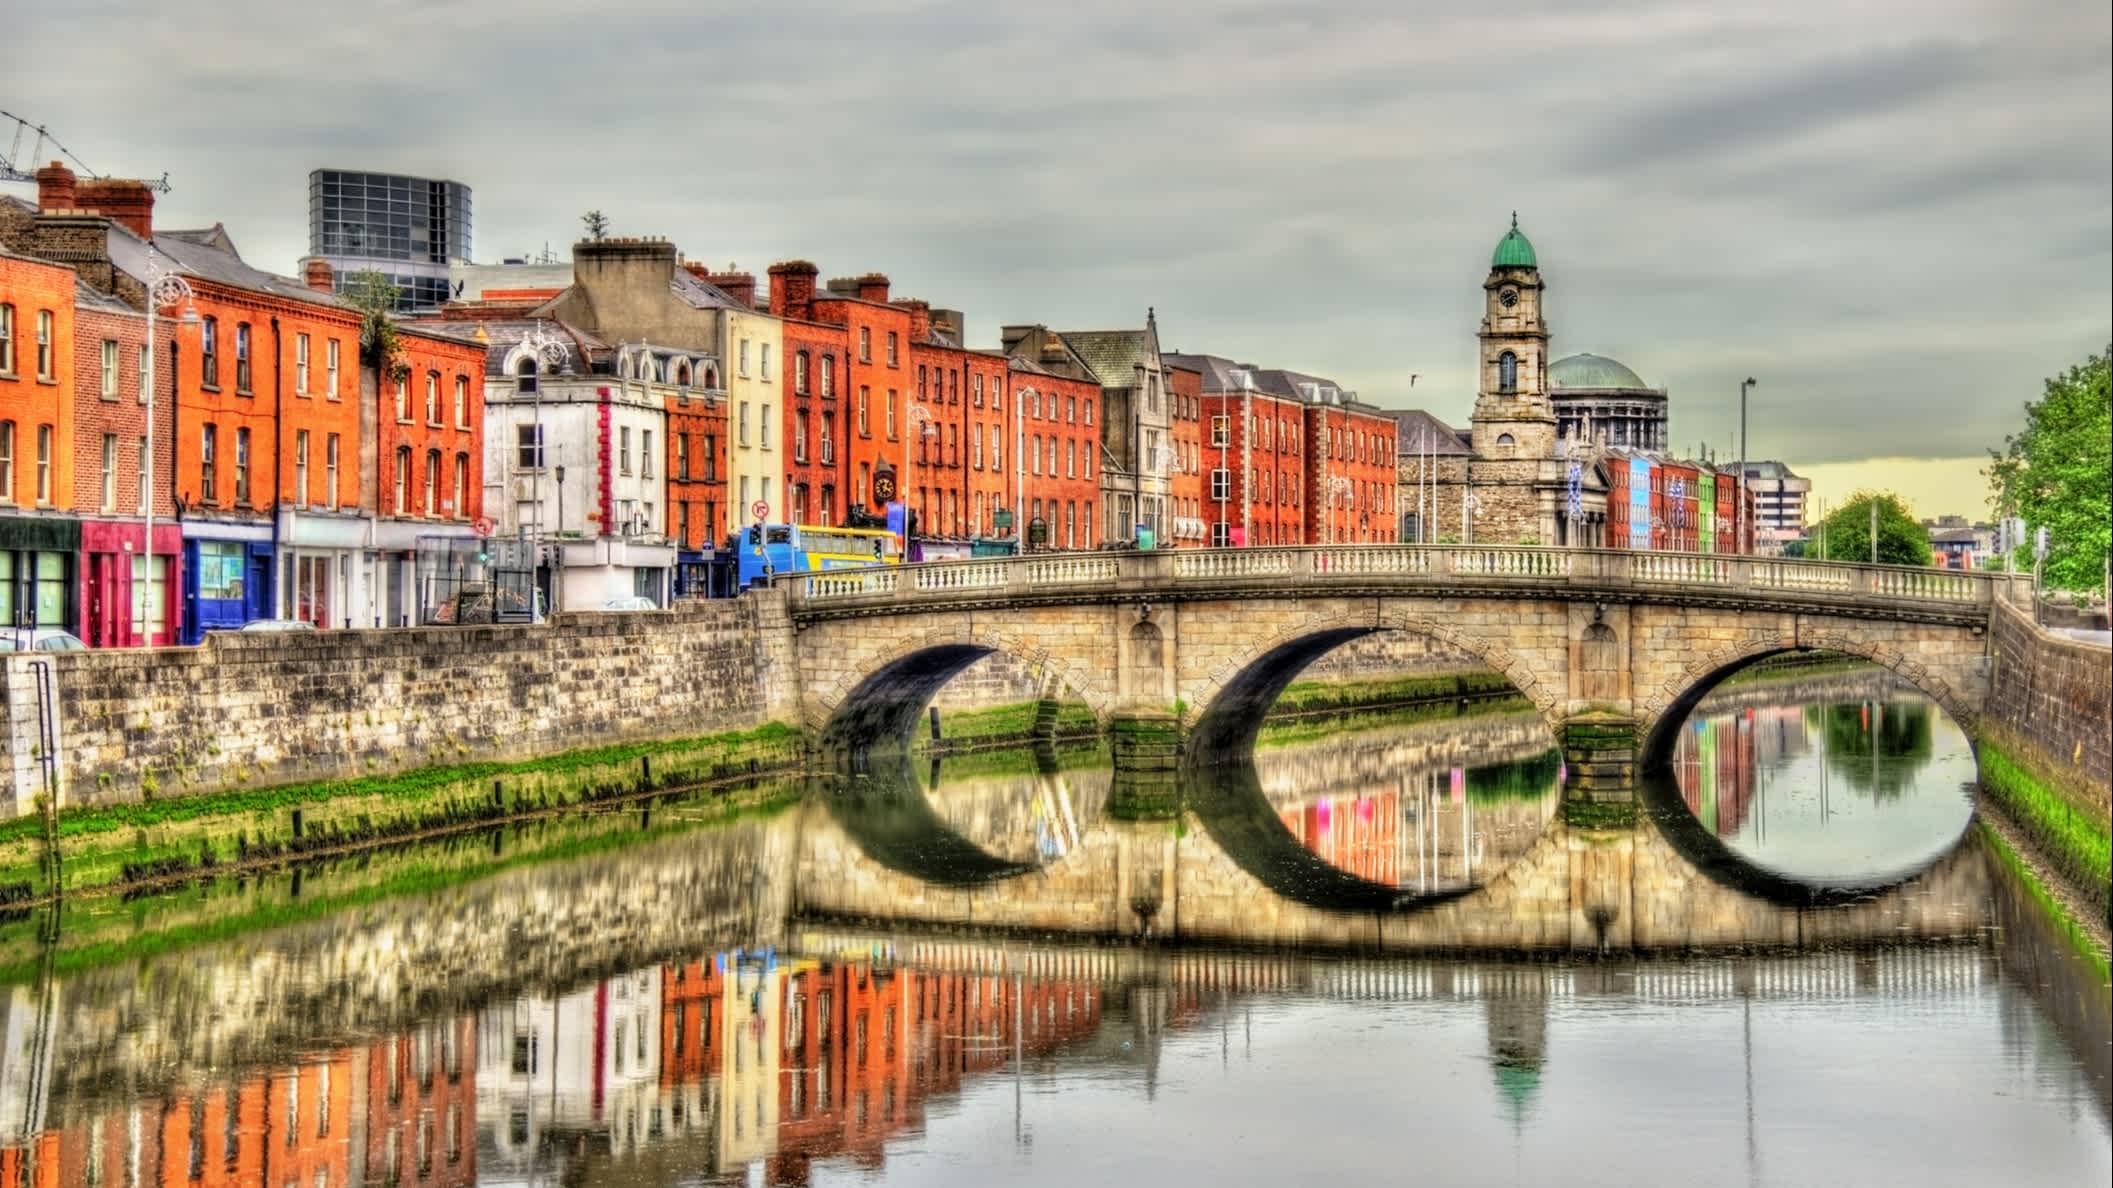 Aussicht auf die Mellows-Brücke in Dublin, Ireland

